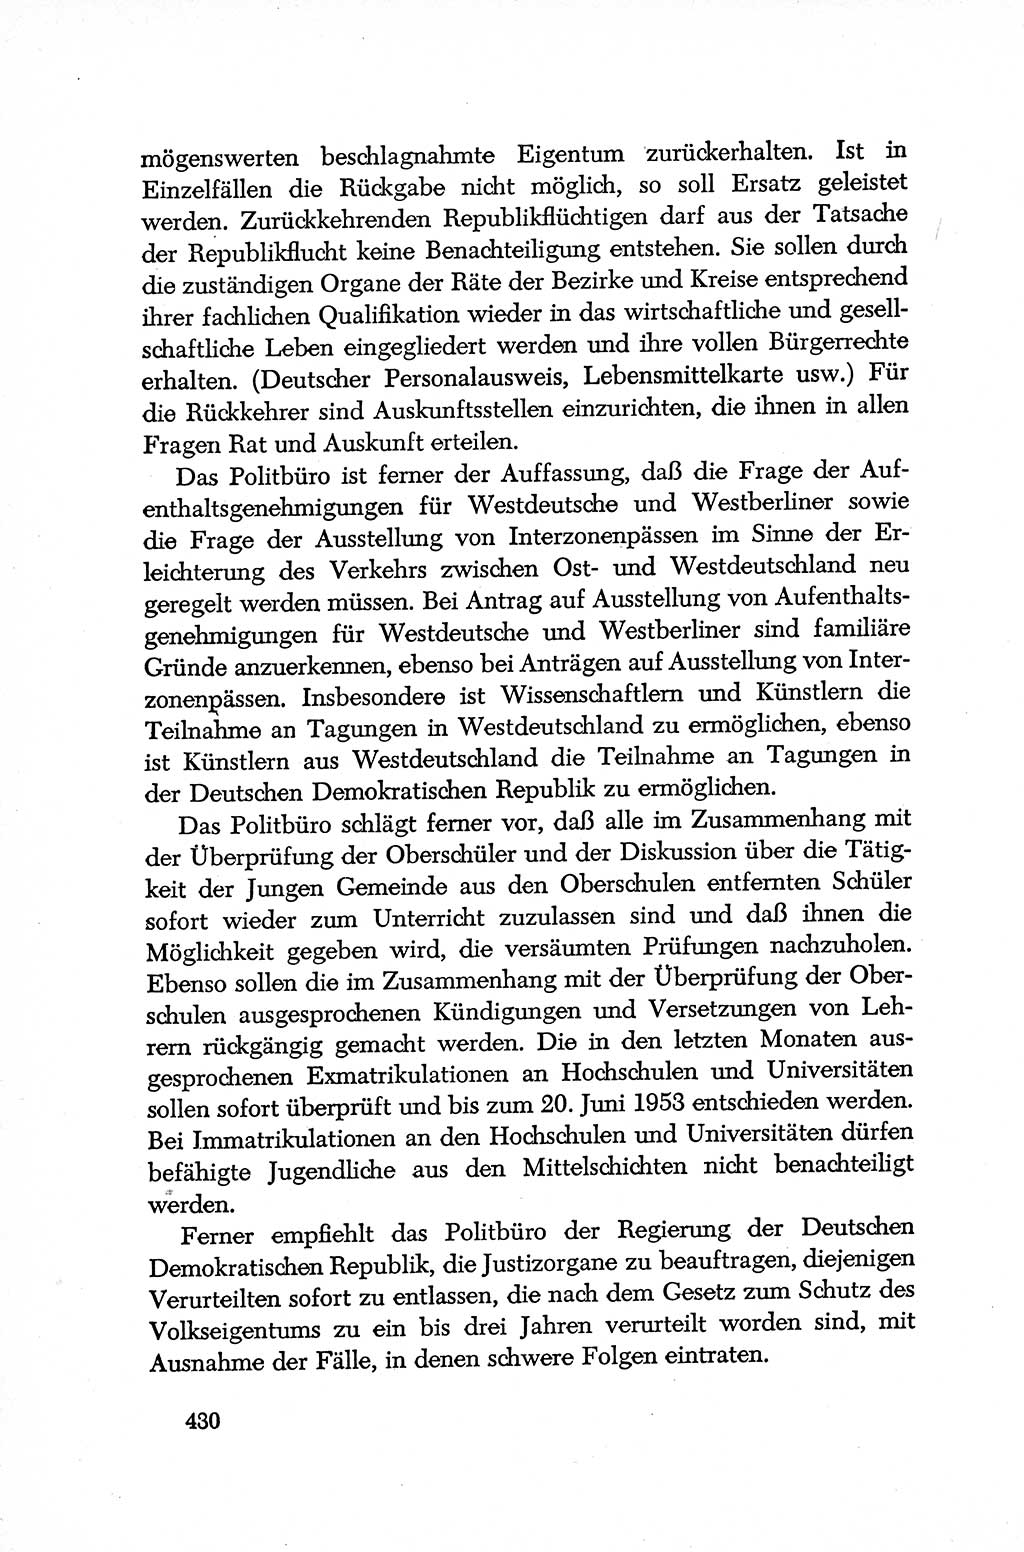 Dokumente der Sozialistischen Einheitspartei Deutschlands (SED) [Deutsche Demokratische Republik (DDR)] 1952-1953, Seite 430 (Dok. SED DDR 1952-1953, S. 430)